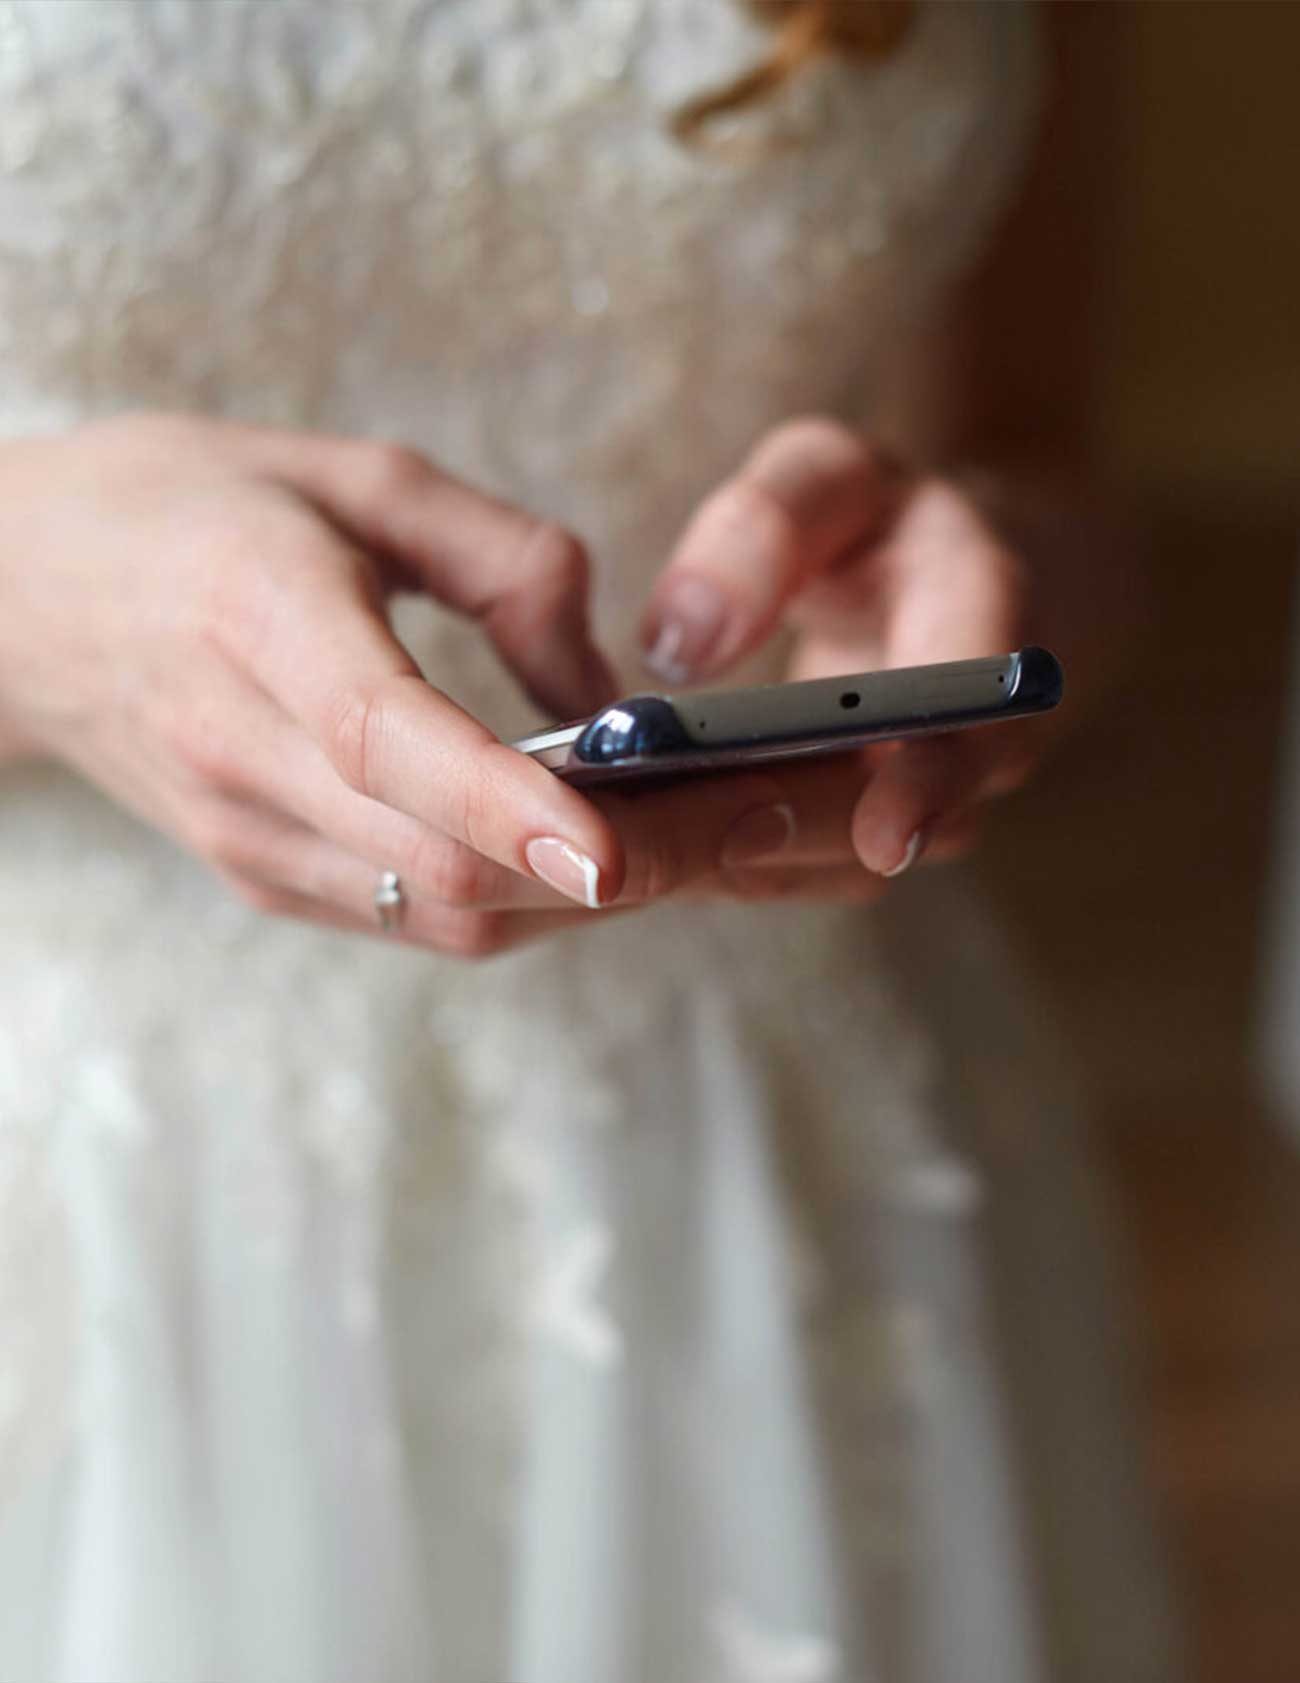 Partecipazioni nozze digitali: quando sceglierle? - Sposi Digitali